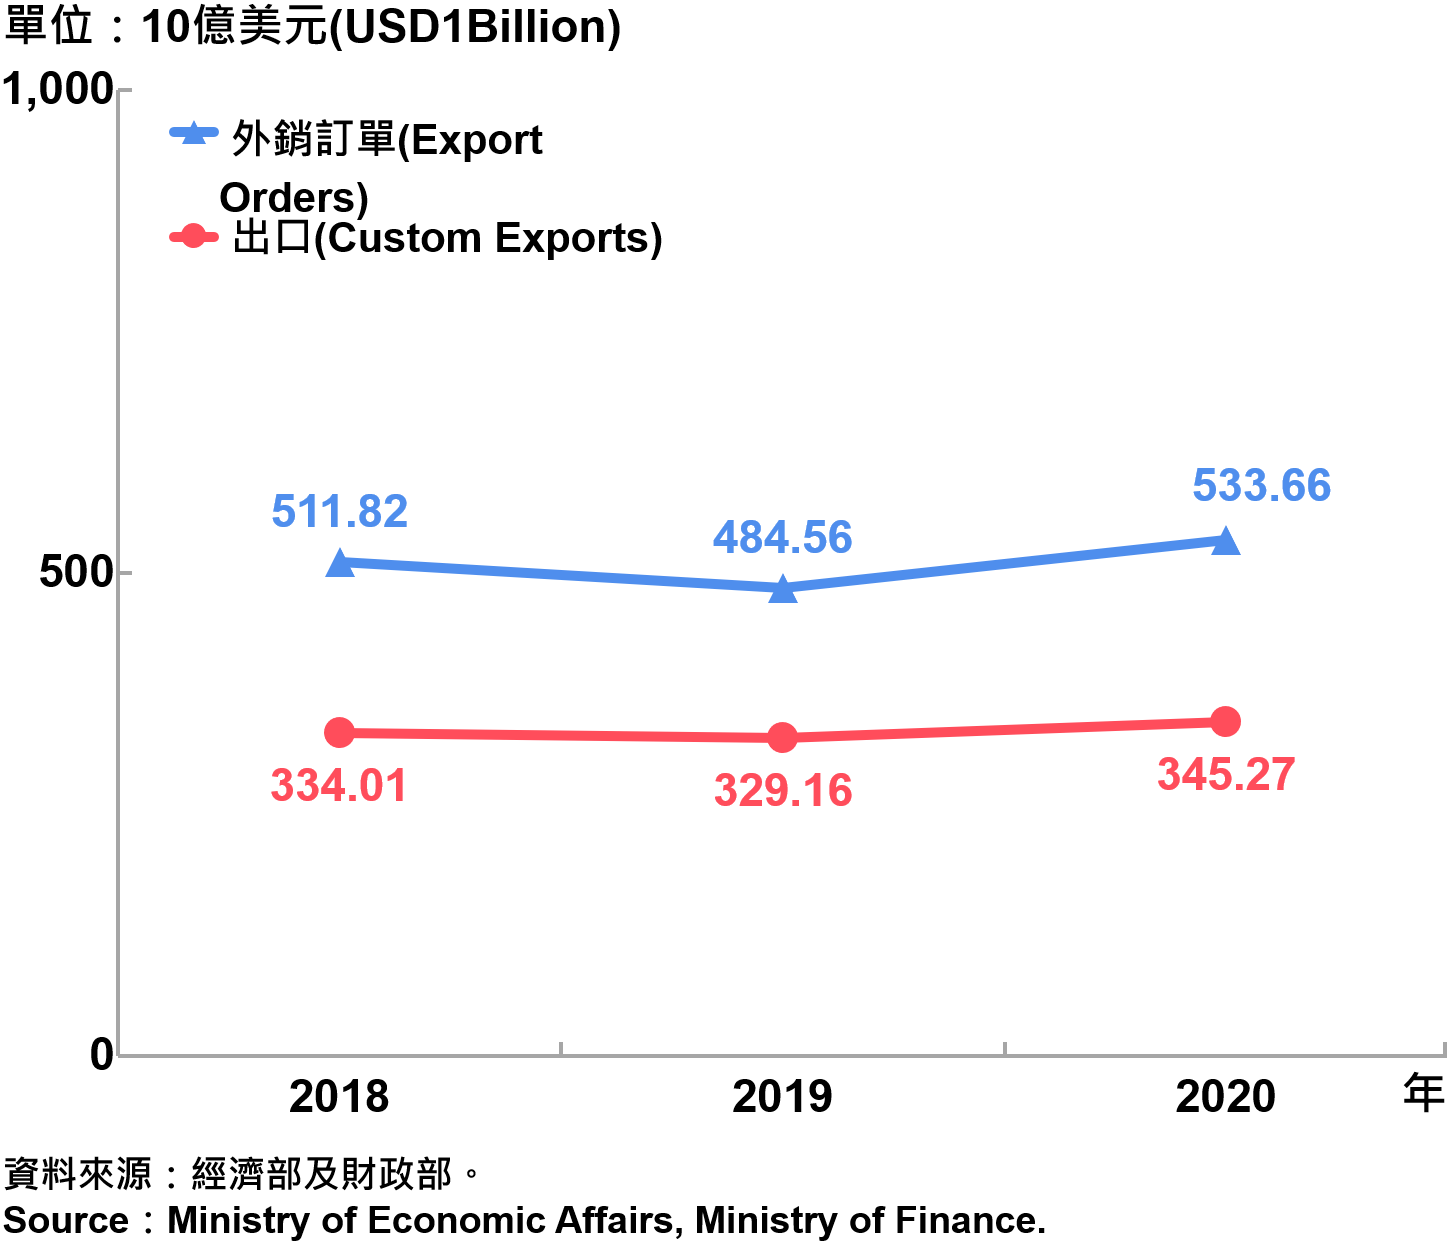 臺灣海關出口與外銷訂單 Custom Export and Export Orders in Taiwan